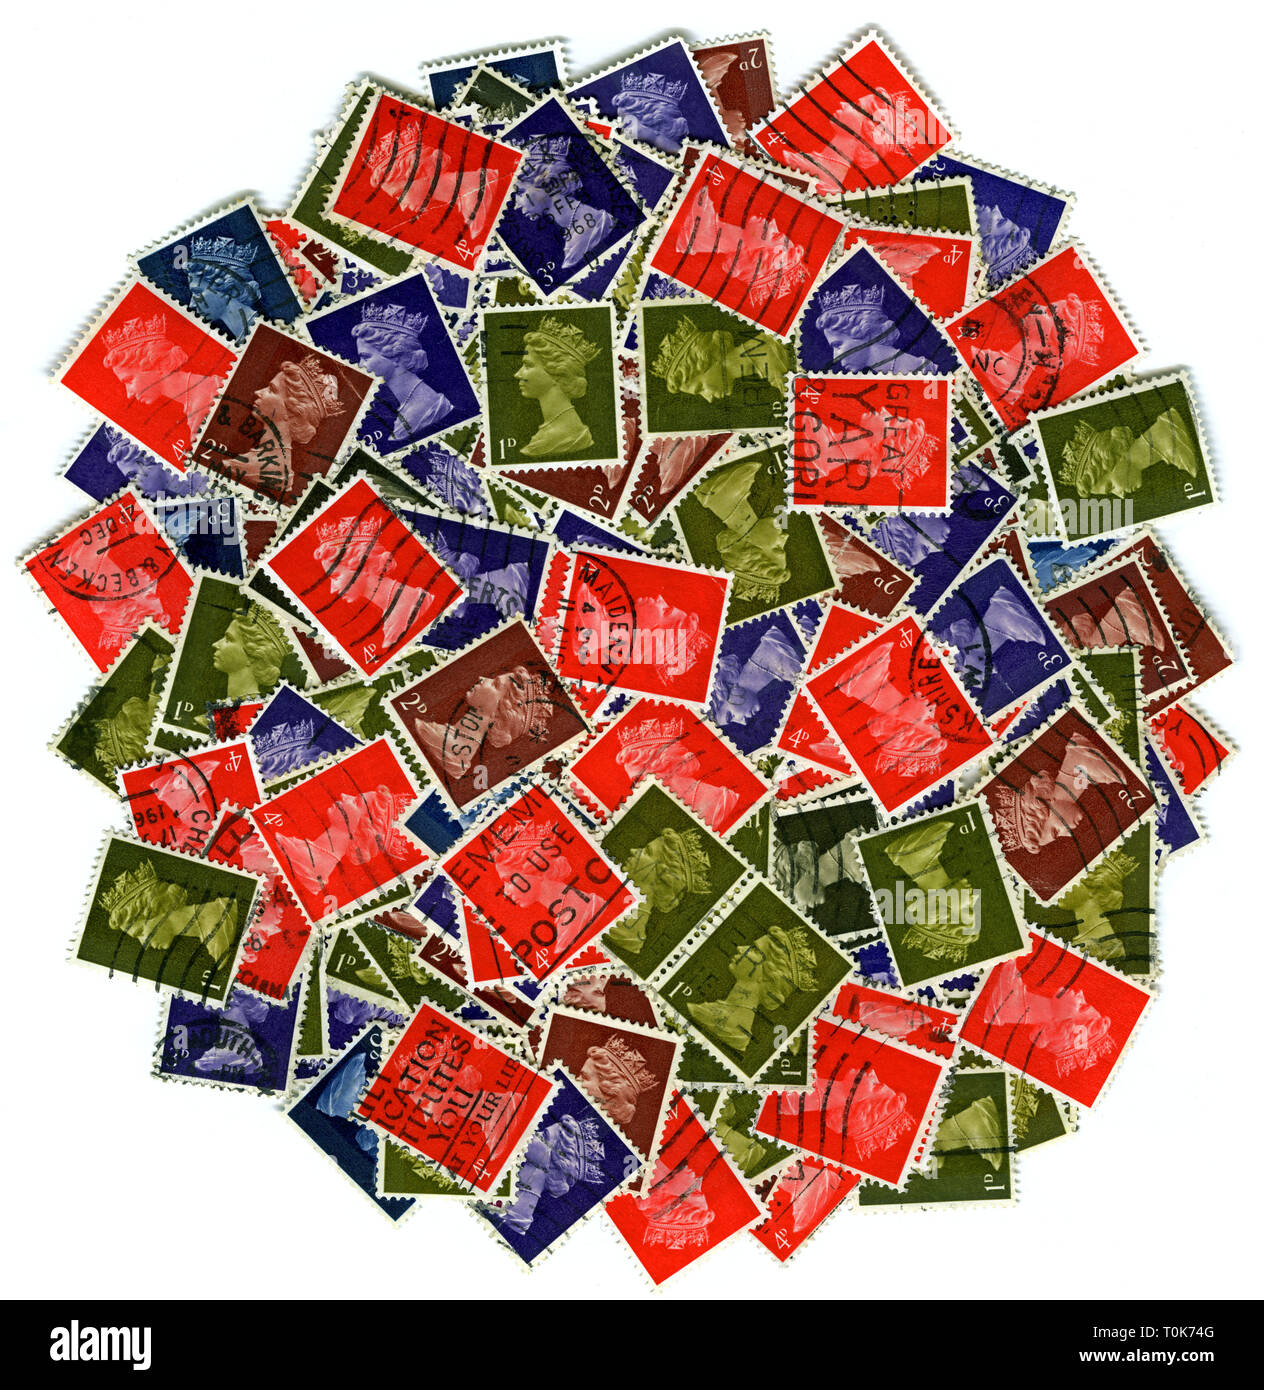 La poste, timbres, en Grande-Bretagne, en 1965 jusqu'en 1969, l'anglais, des timbres, de la reine Elizabeth II, Reine Elisabeth II, Additional-Rights Clearance-Info-Not-Available- Banque D'Images